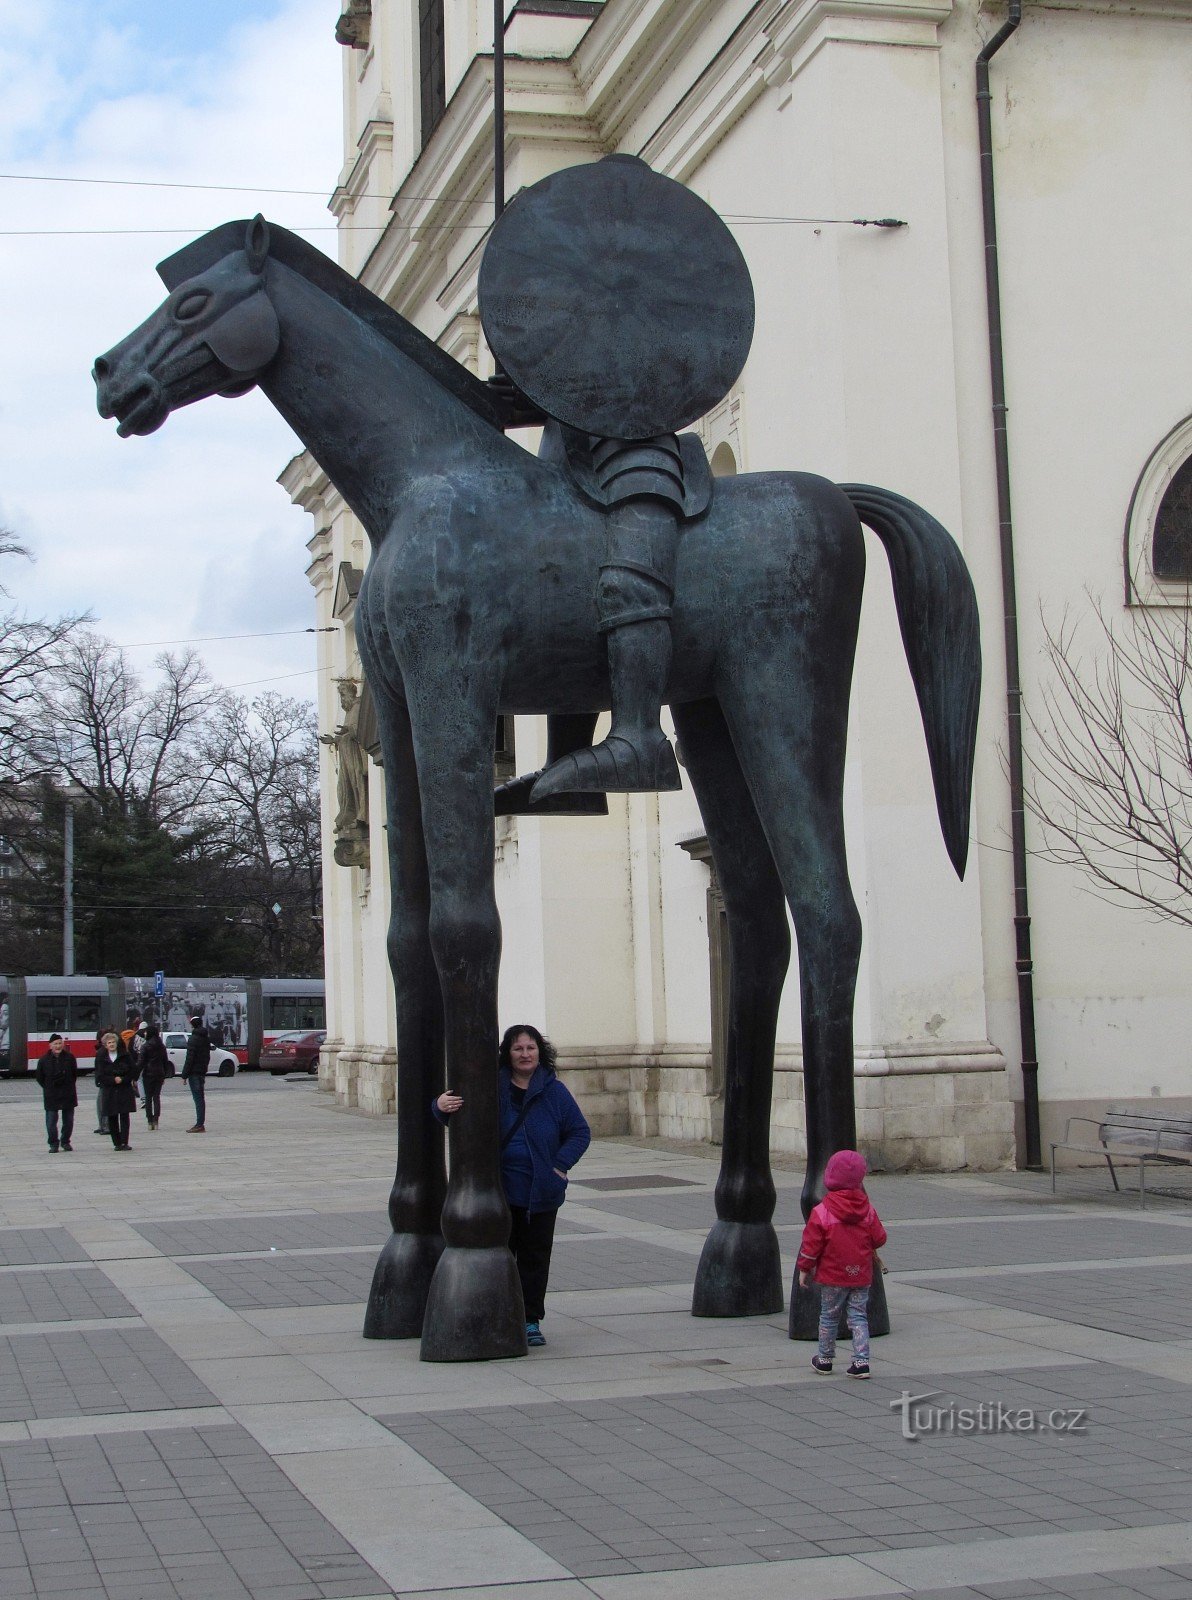 ブルノ - ヨシュト辺境伯と馬の像